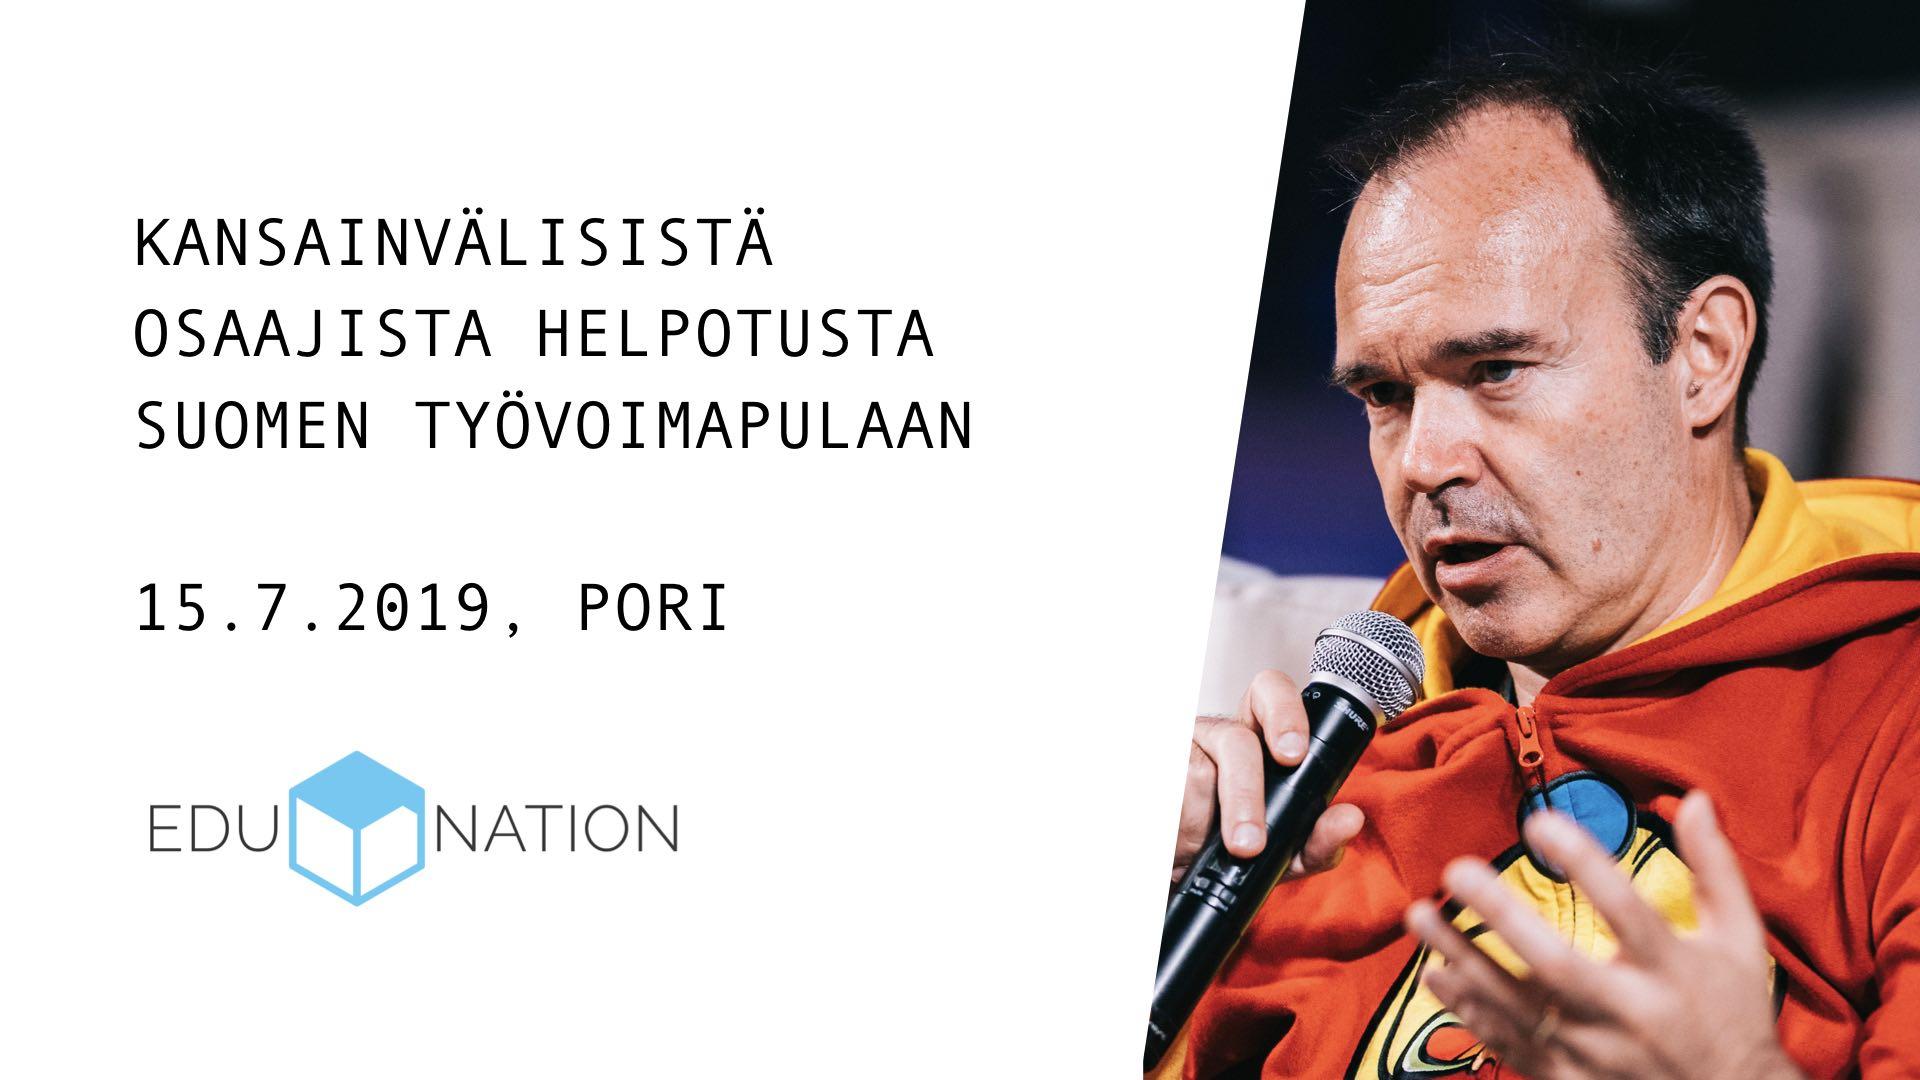 15.7.2019 – Edunation: Kansainvälisistä osaajista helpotusta Suomen työvoimapulaan (Pori)